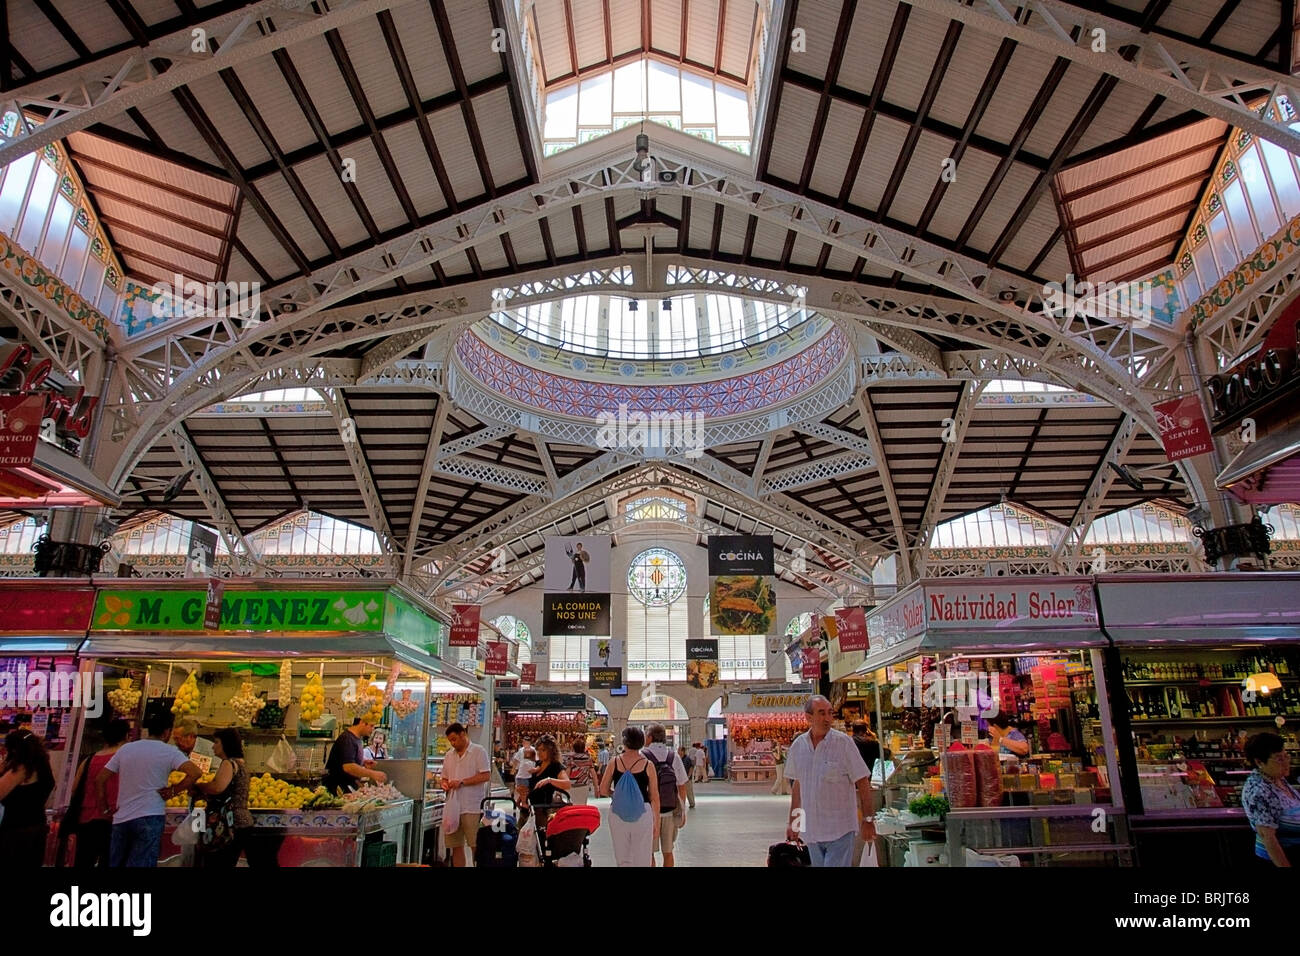 Panoramica parziale del mercato centrale, una struttura metallica decorata con lavori di ceramica, ferro battuto e vetro. Foto Stock